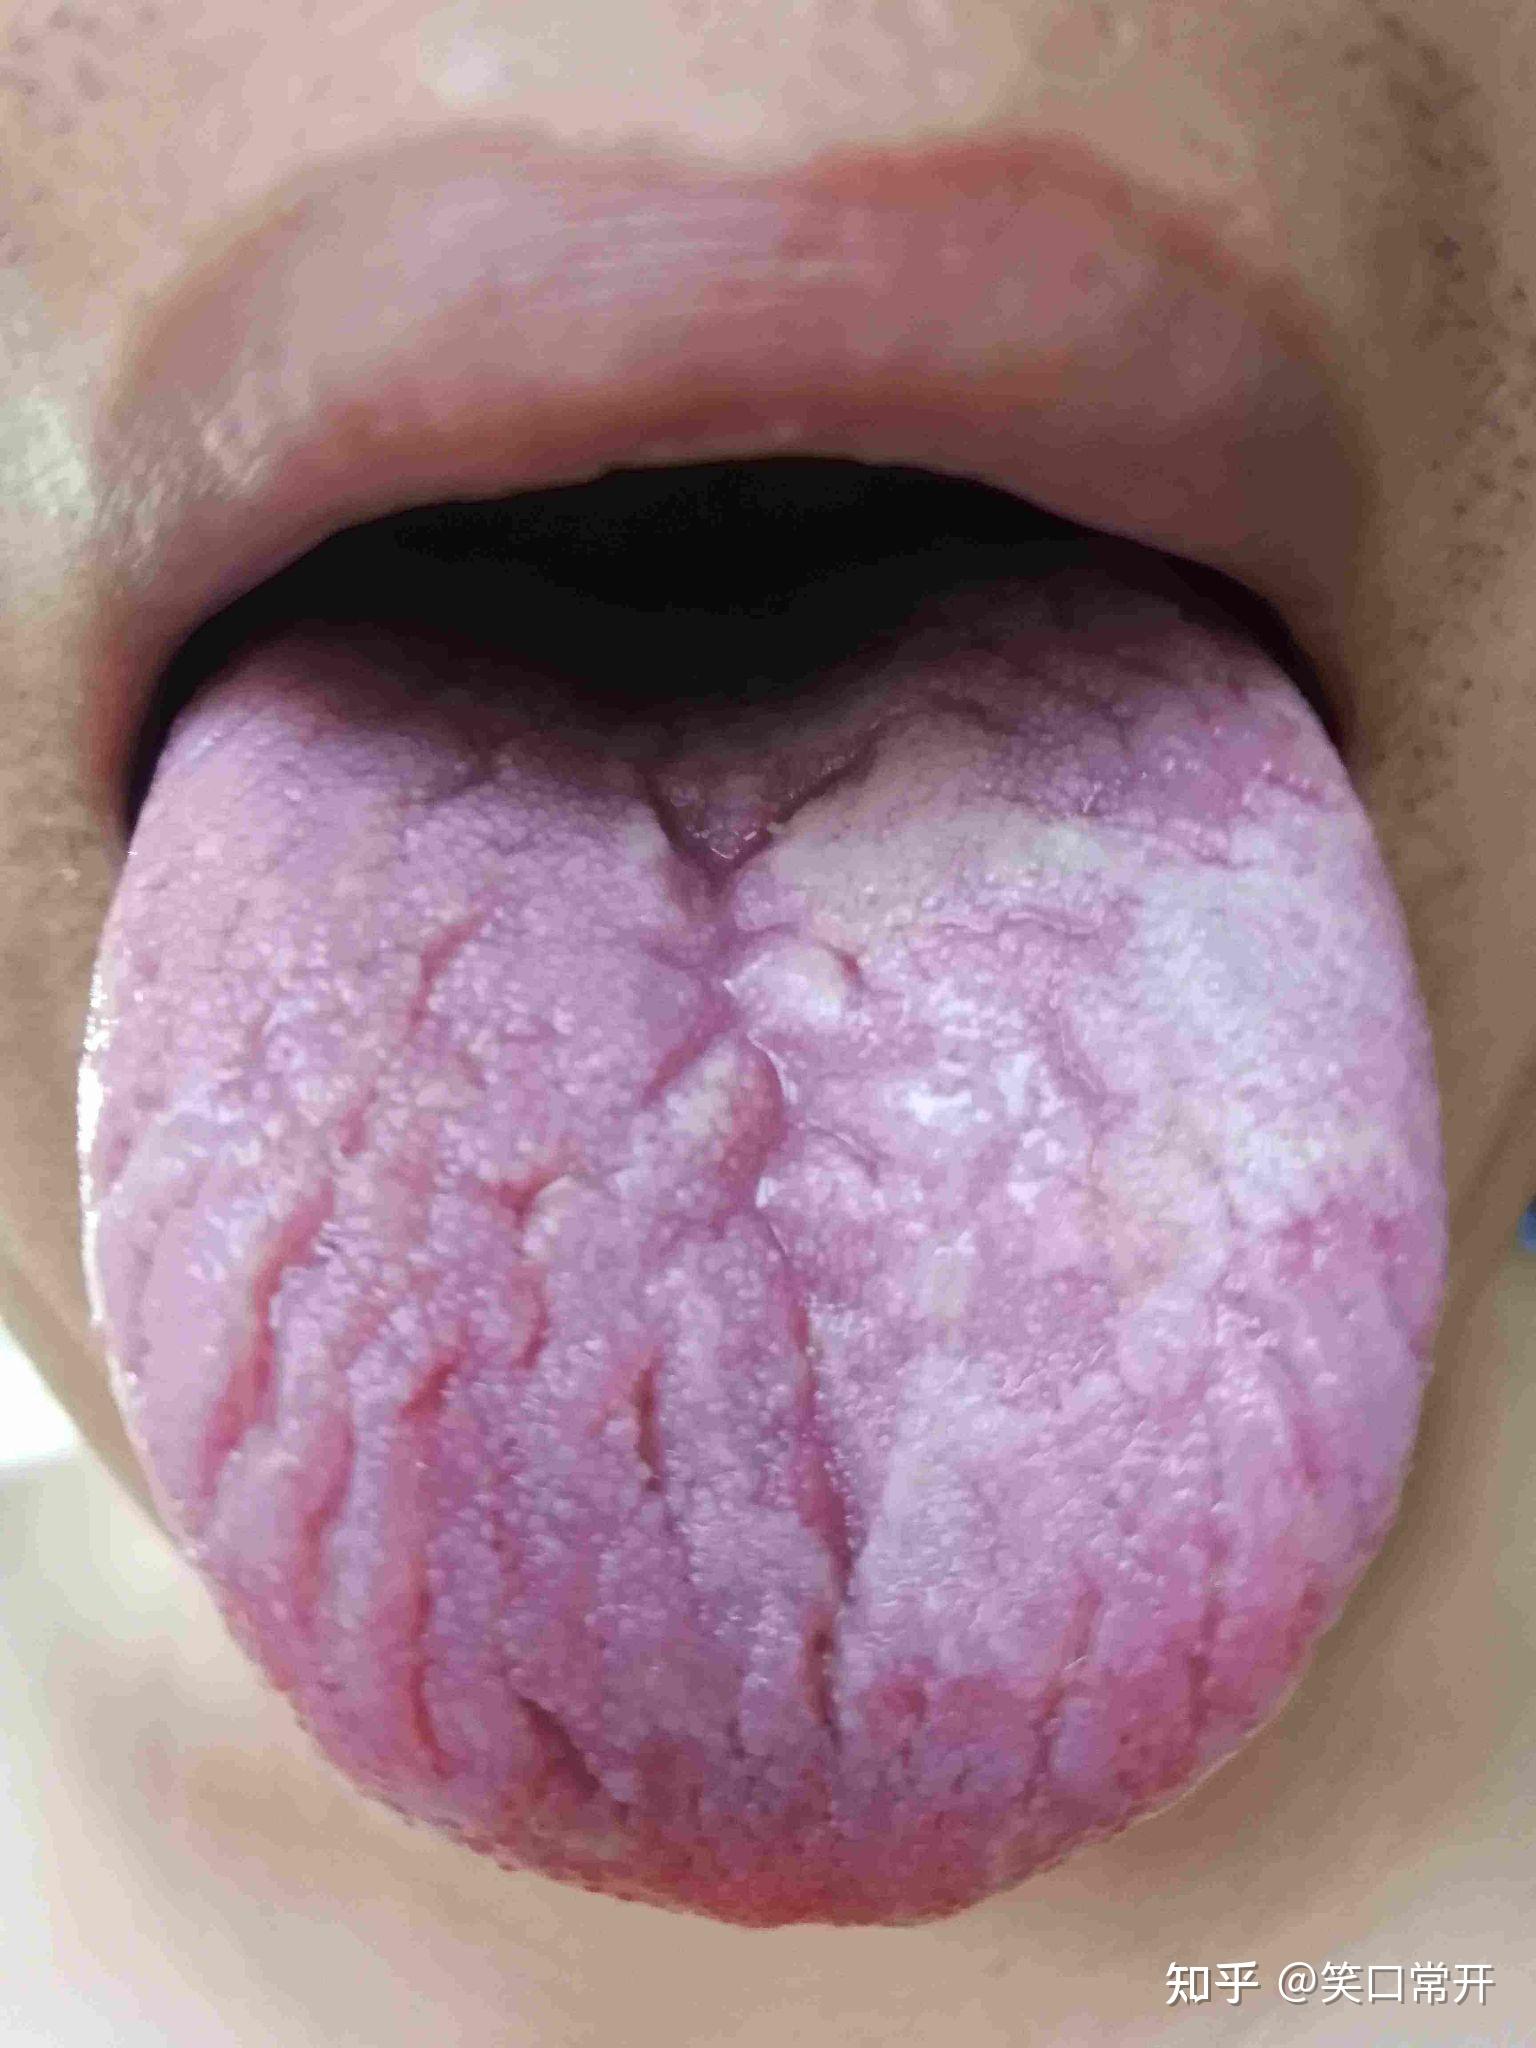 你的舌头上有裂纹吗？ - 知乎